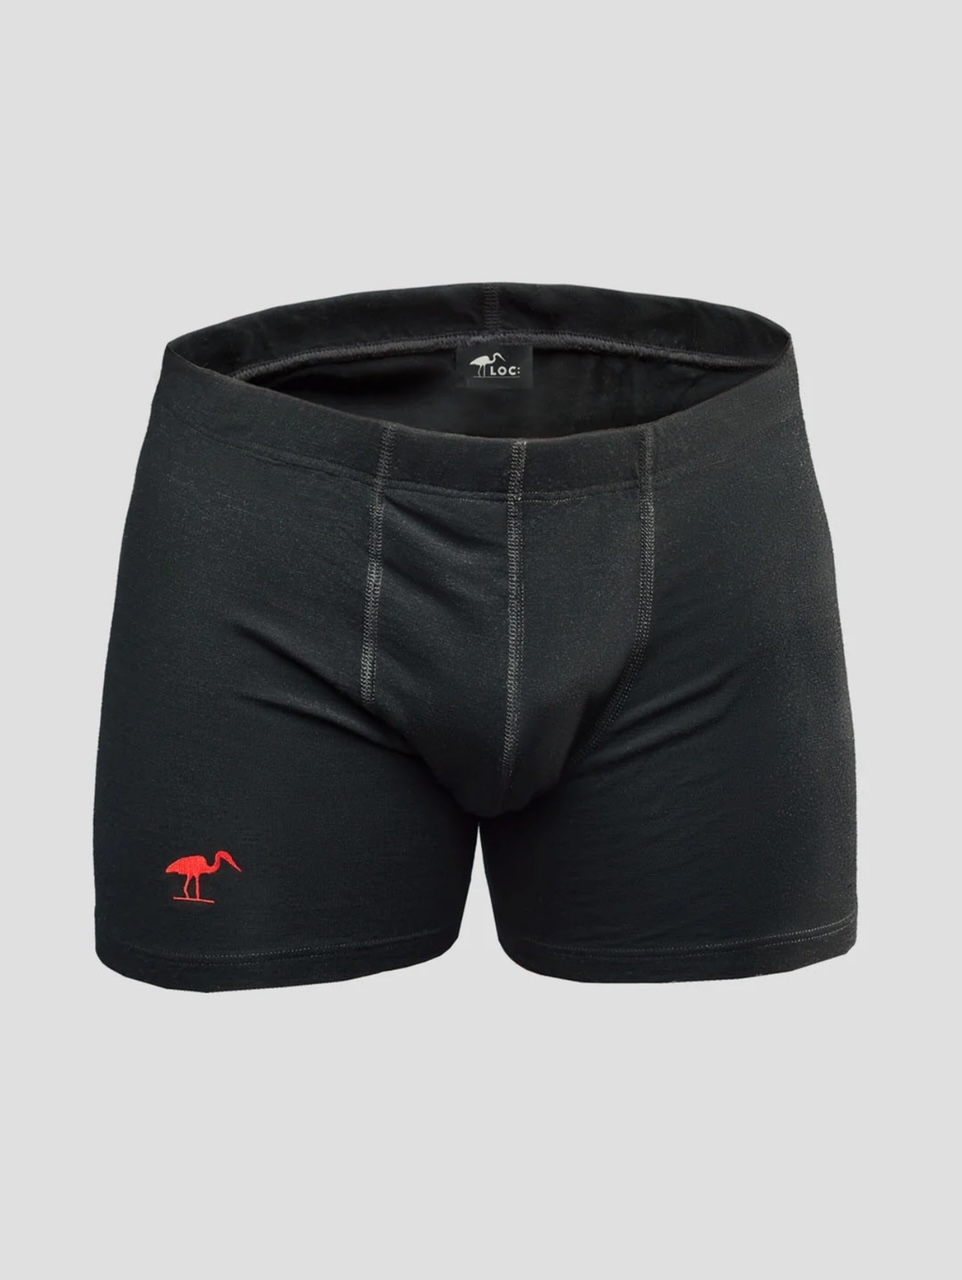 LOC Merino Boxer Shorts - Size Medium